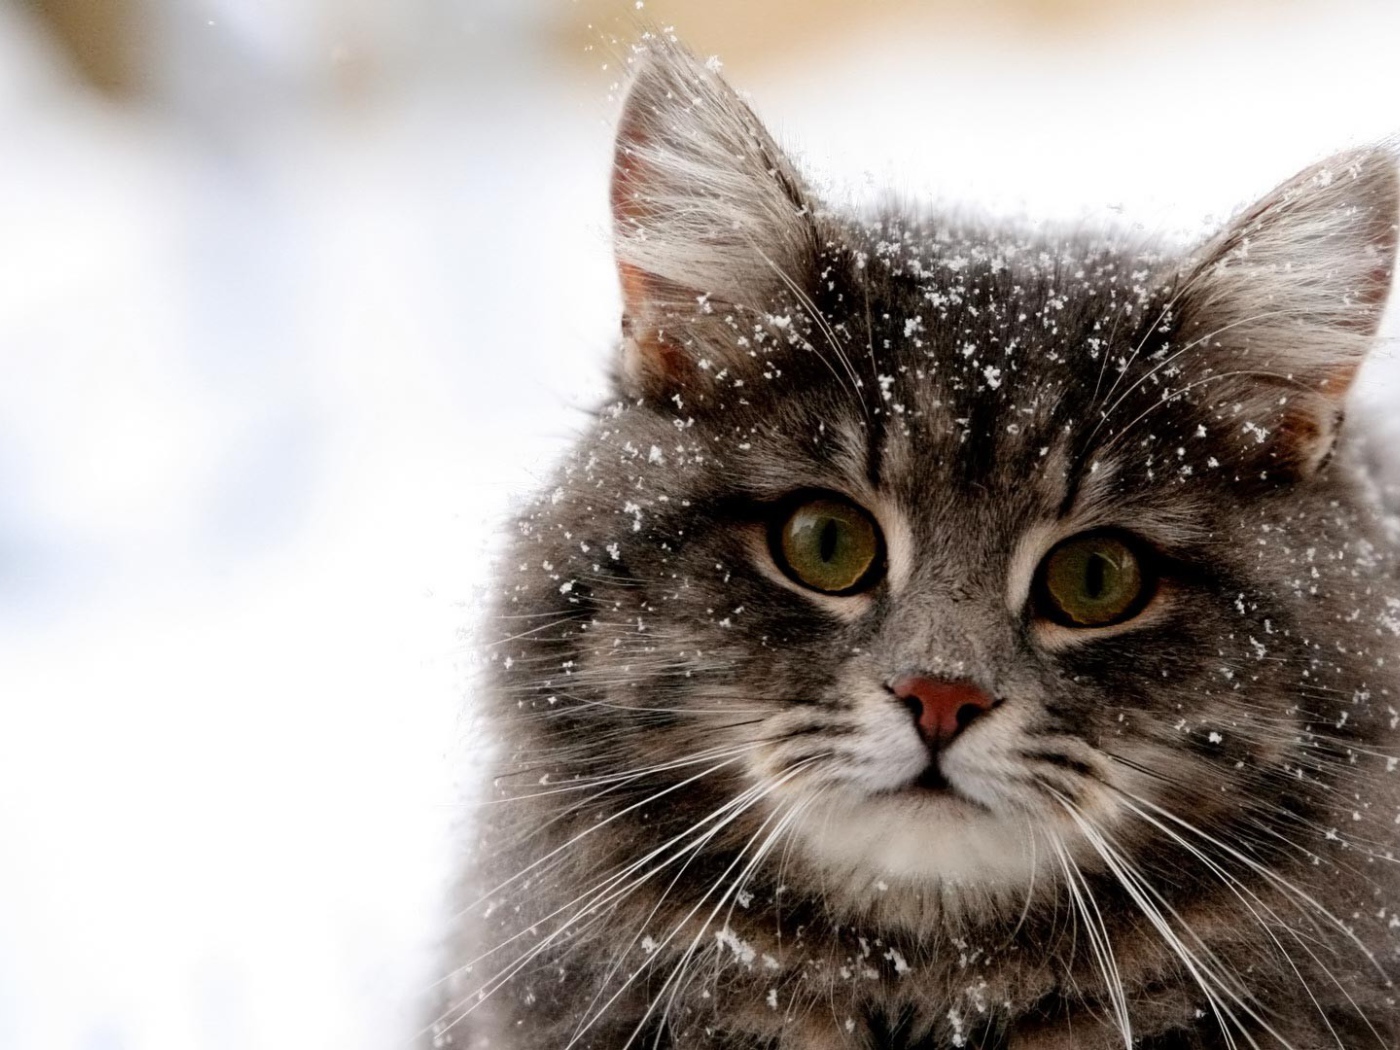 Снег на шерсти кота